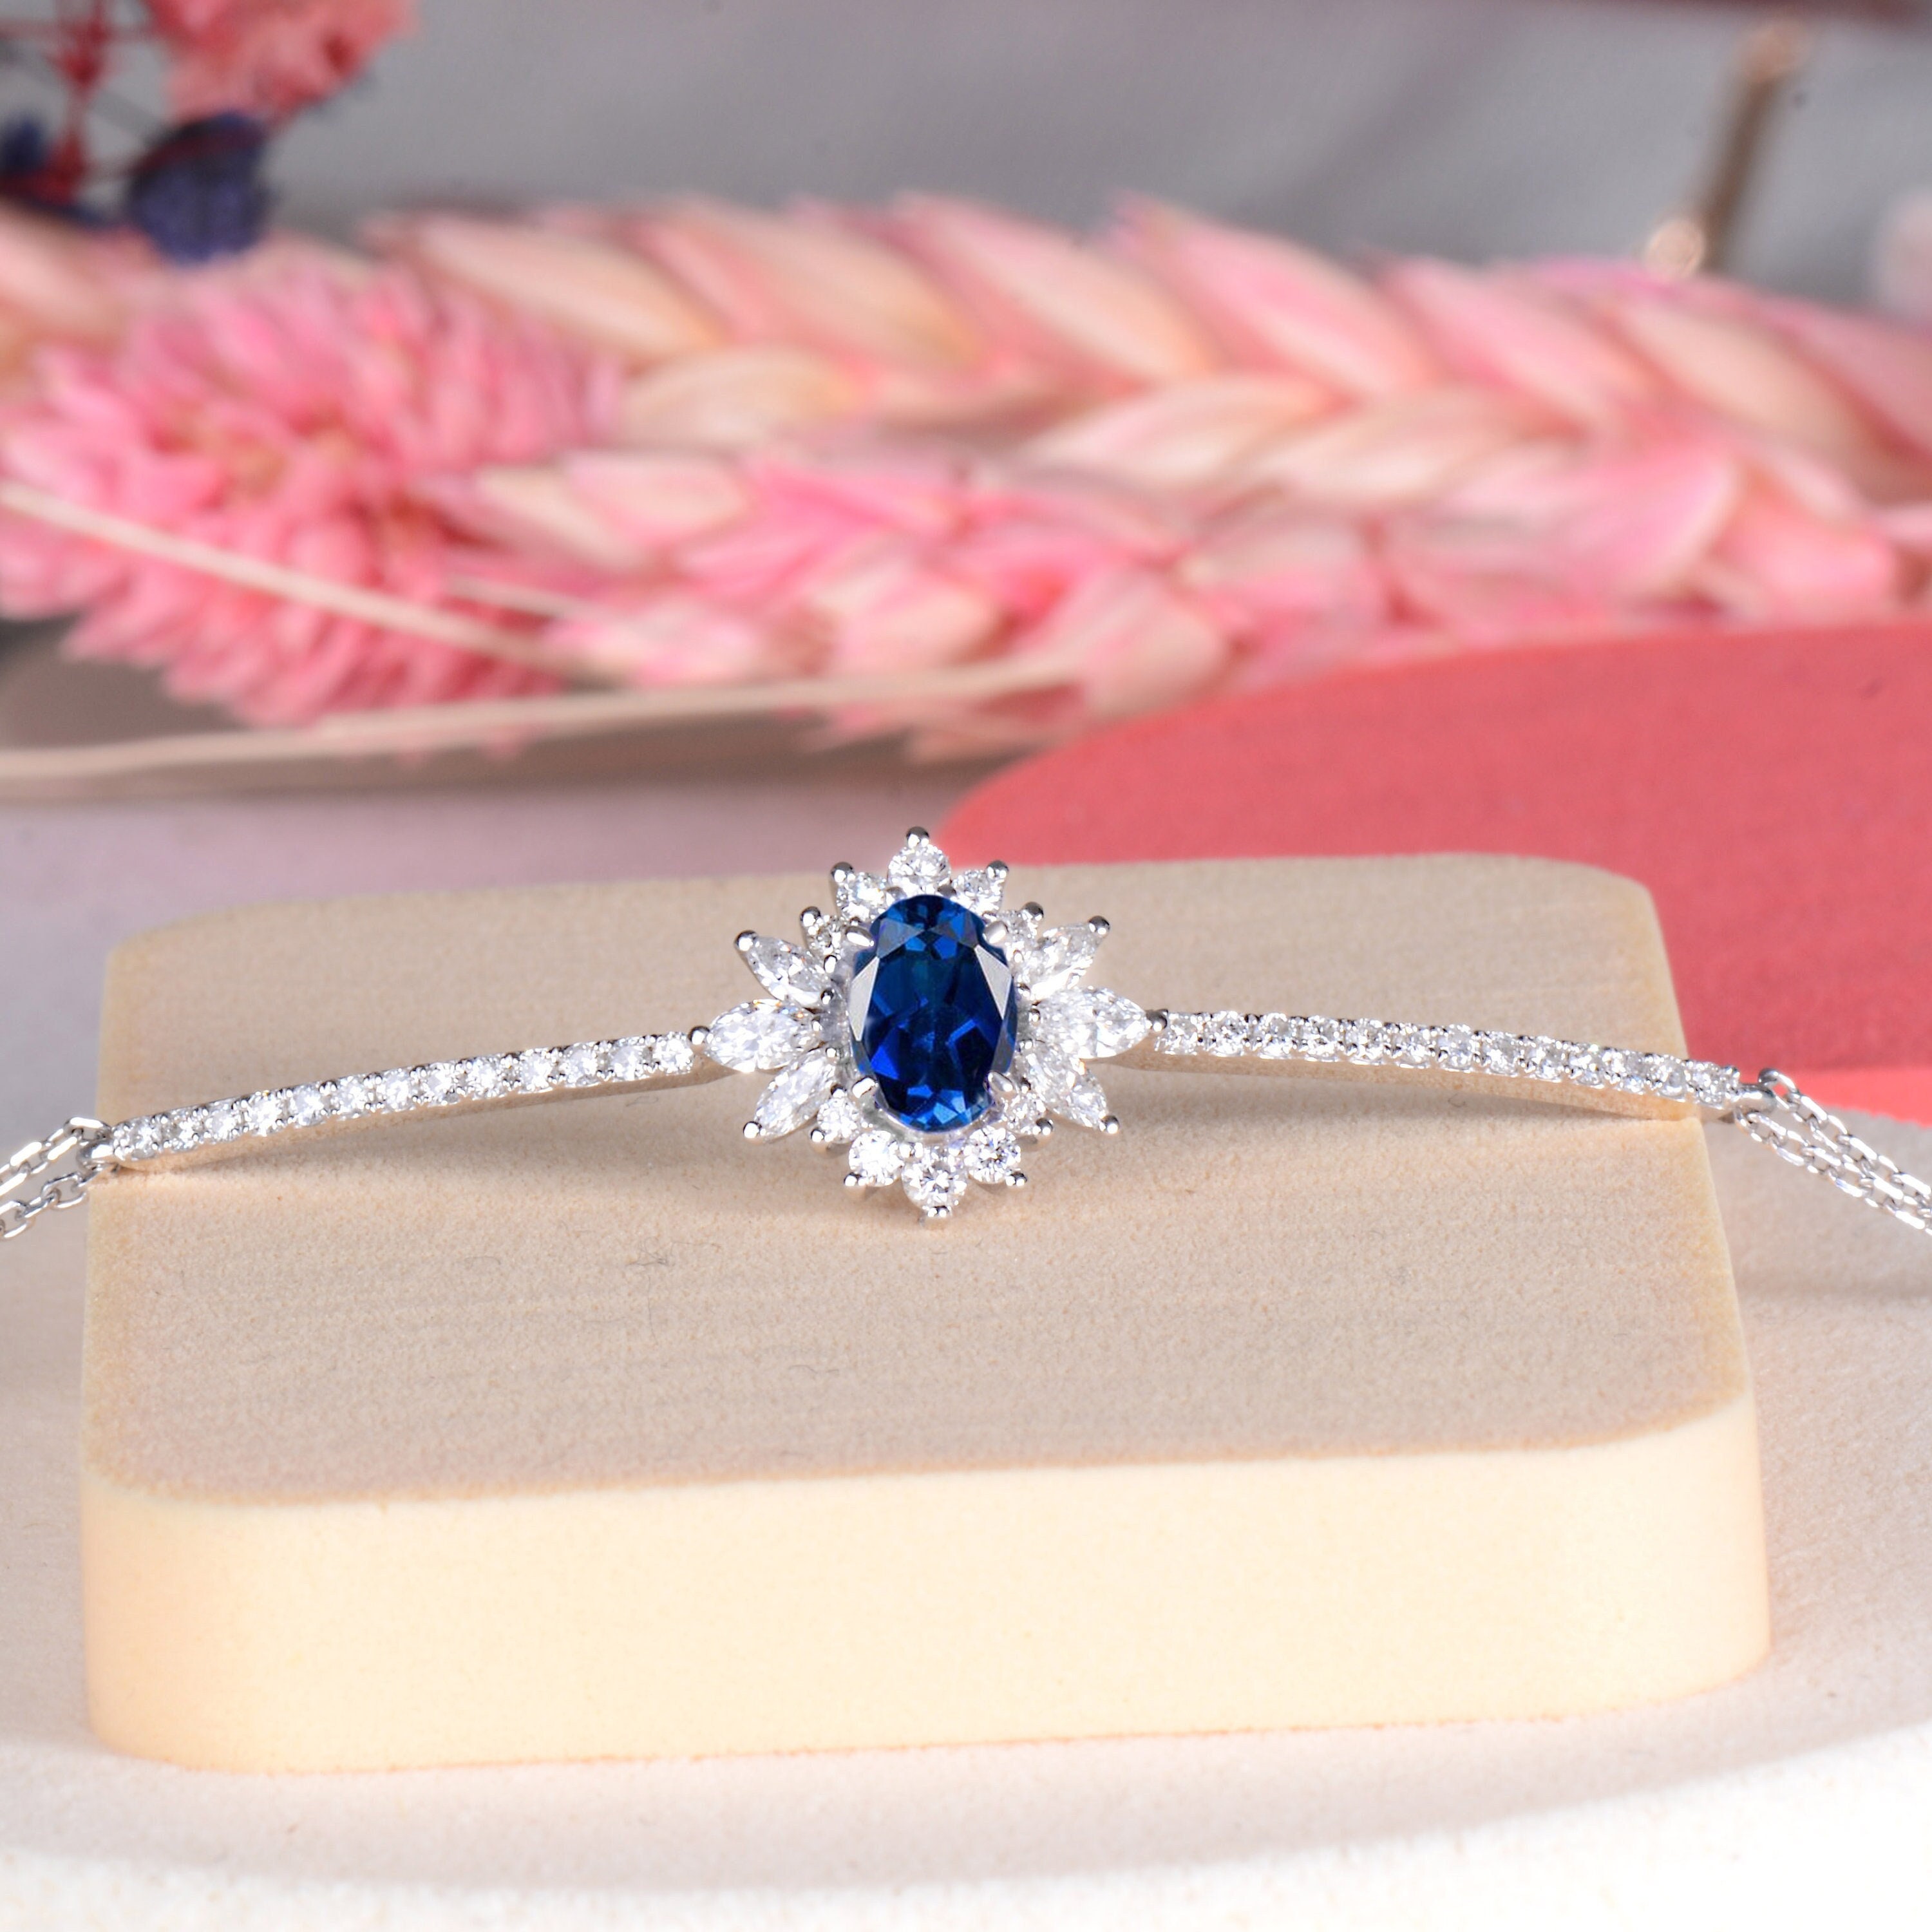 Blue Sapphire Bracelet. Montana Blue Jewelry. Custom Bracelet. Personalized  Jewelry. Handstamp Initial Bracelet.gold Filled Bracelet. - Etsy | Blue sapphire  bracelet, Sapphire bracelet, Custom bracelets